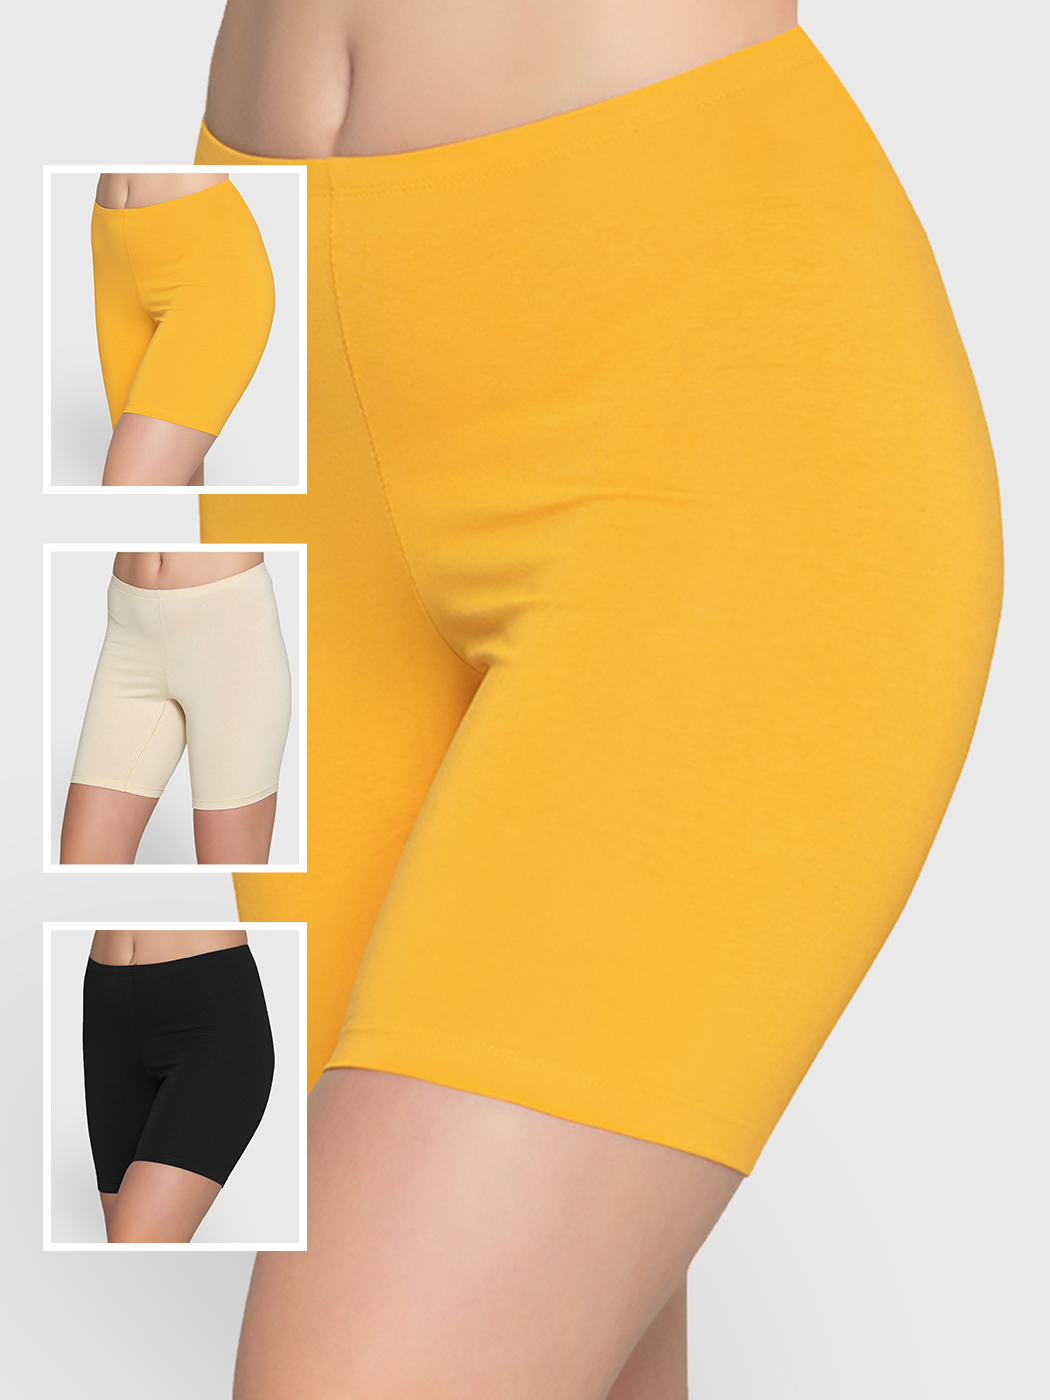 Cпортивные шорты женские Lunarable ktyt005-3_ желтые M